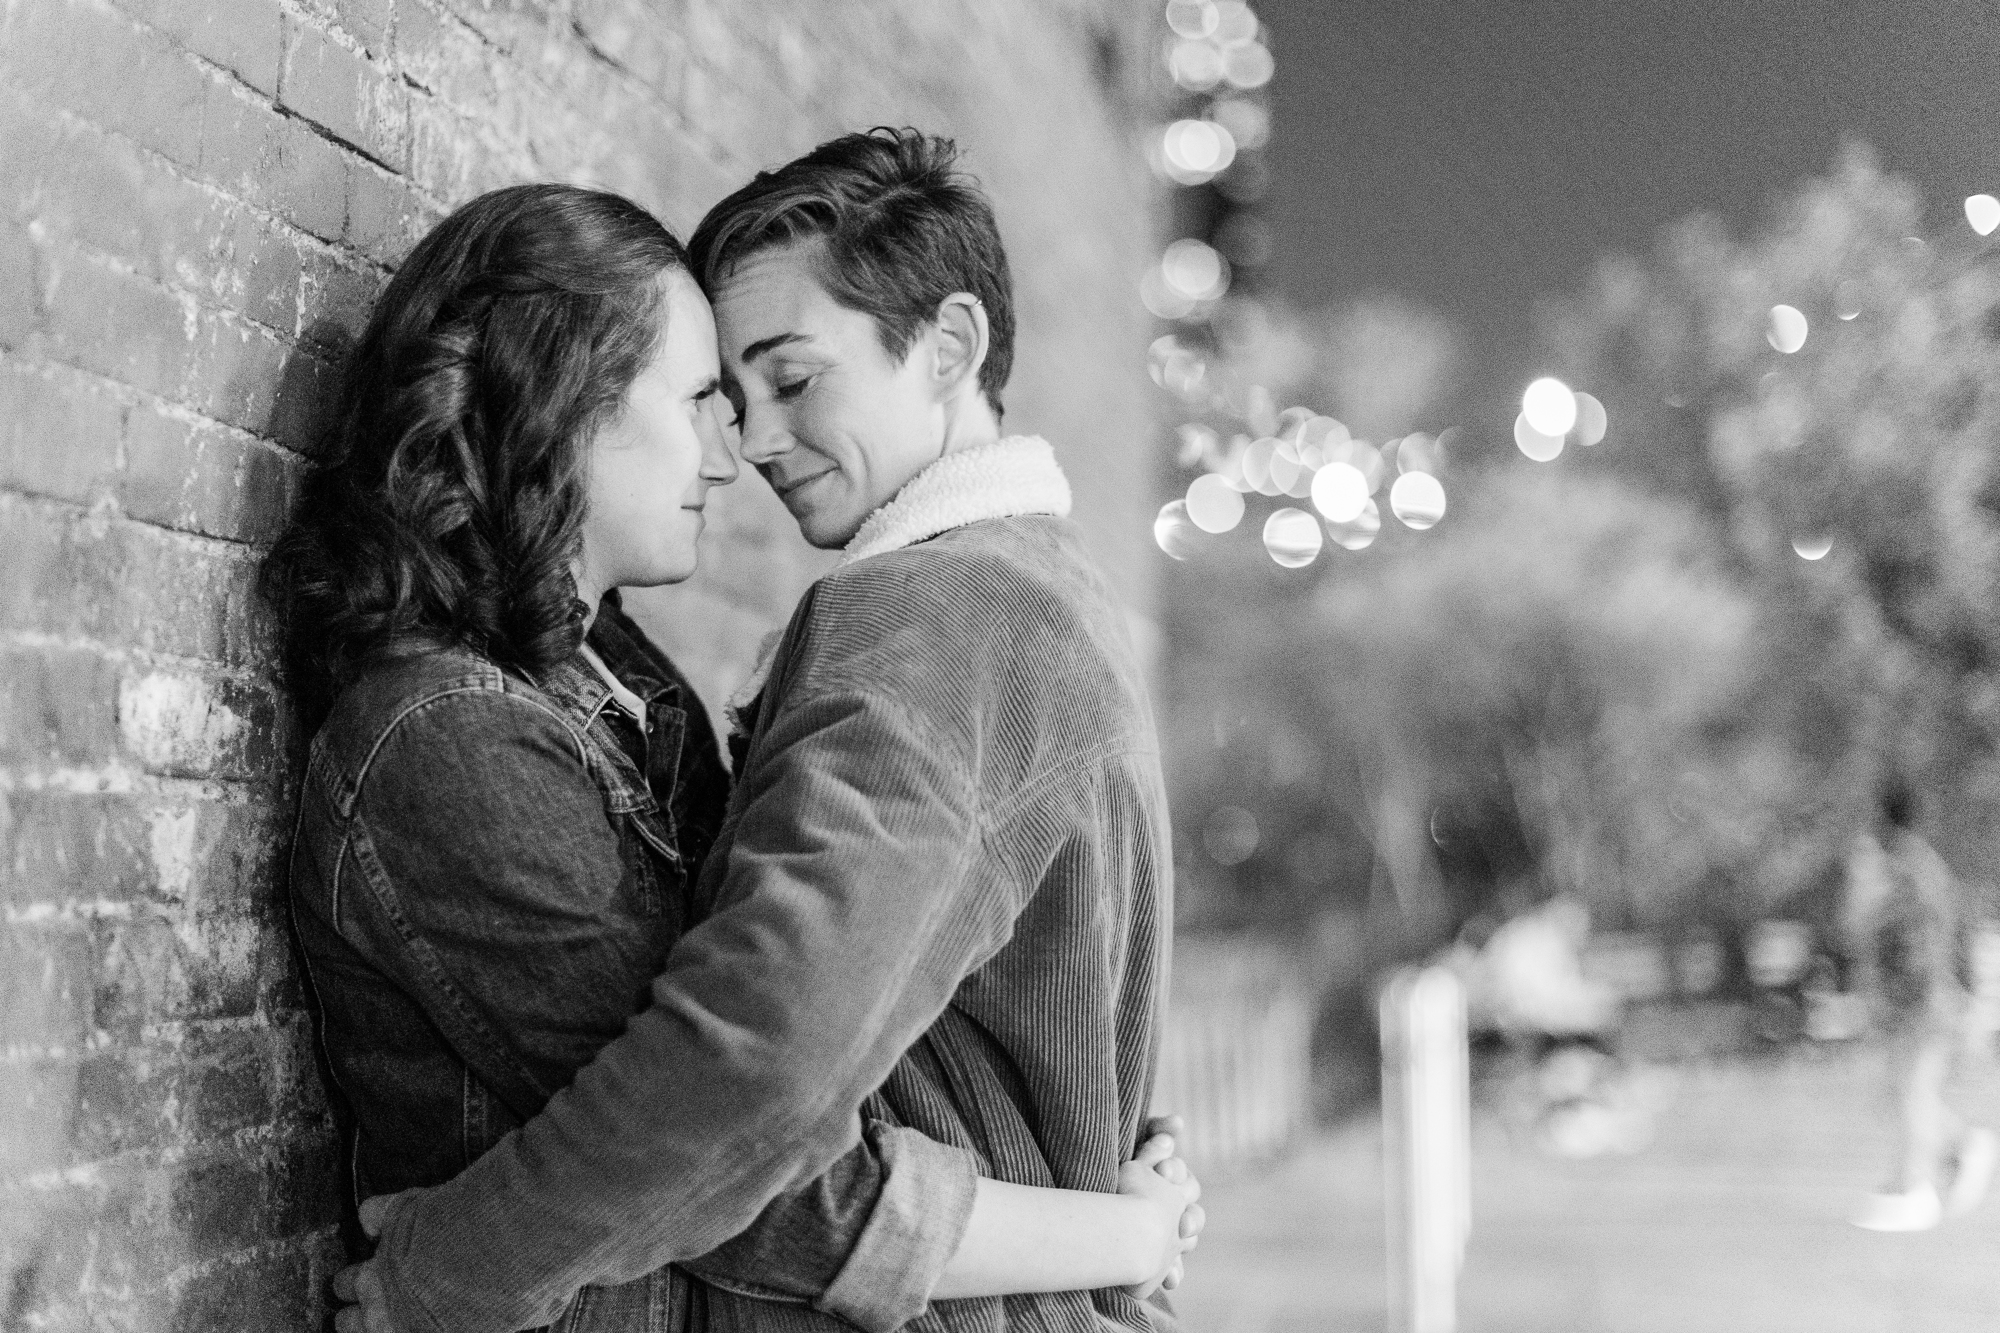 Joyful DUMBO Engagement Photo Shoot in NYC